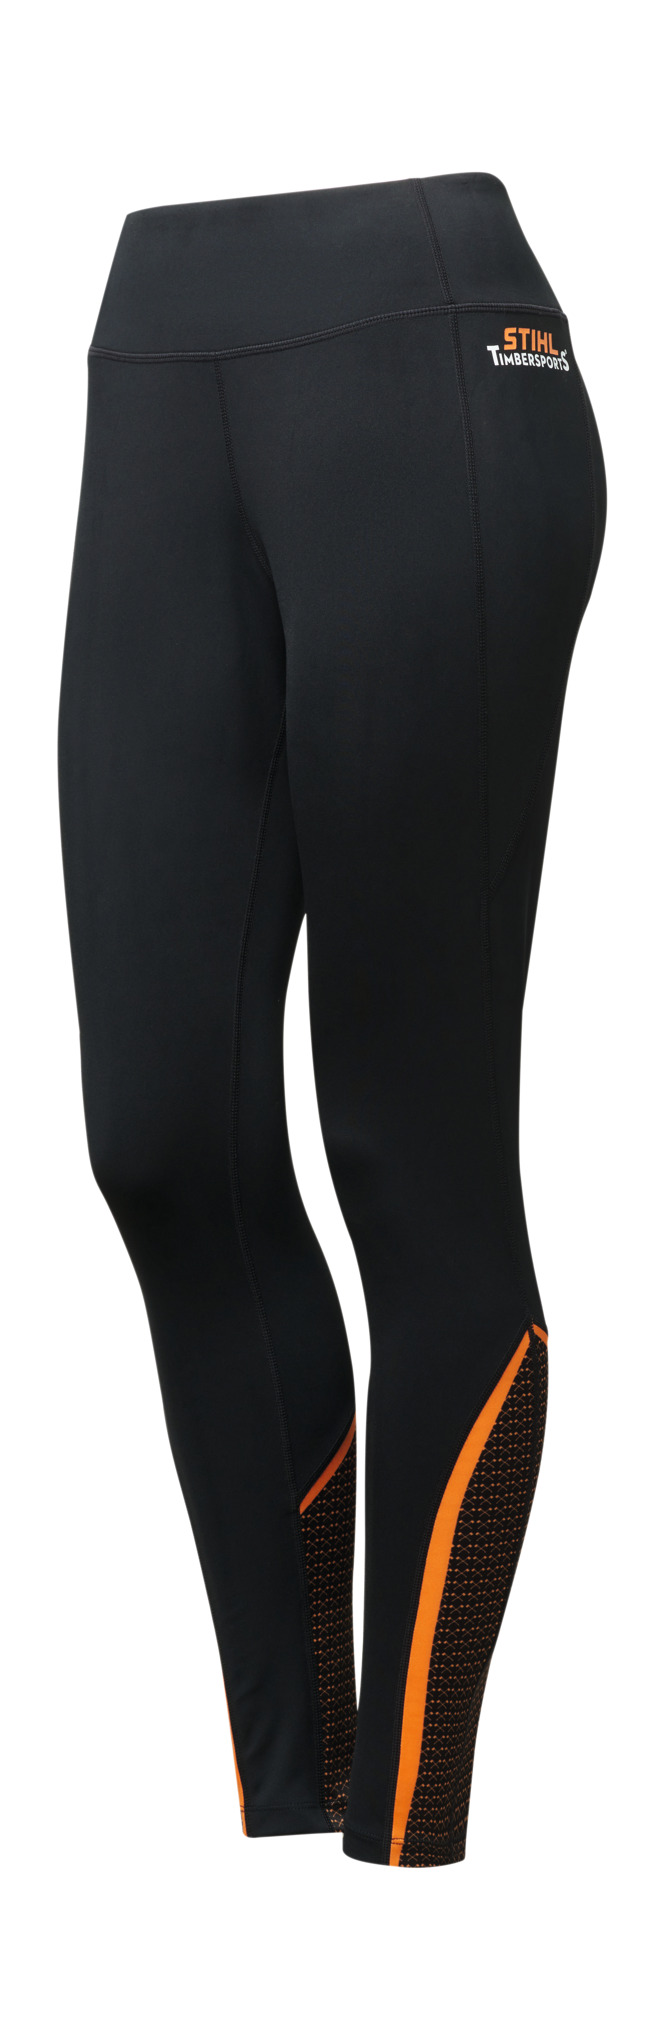 STIHL TIMBERSPORTS® SCORE sports leggings - Women